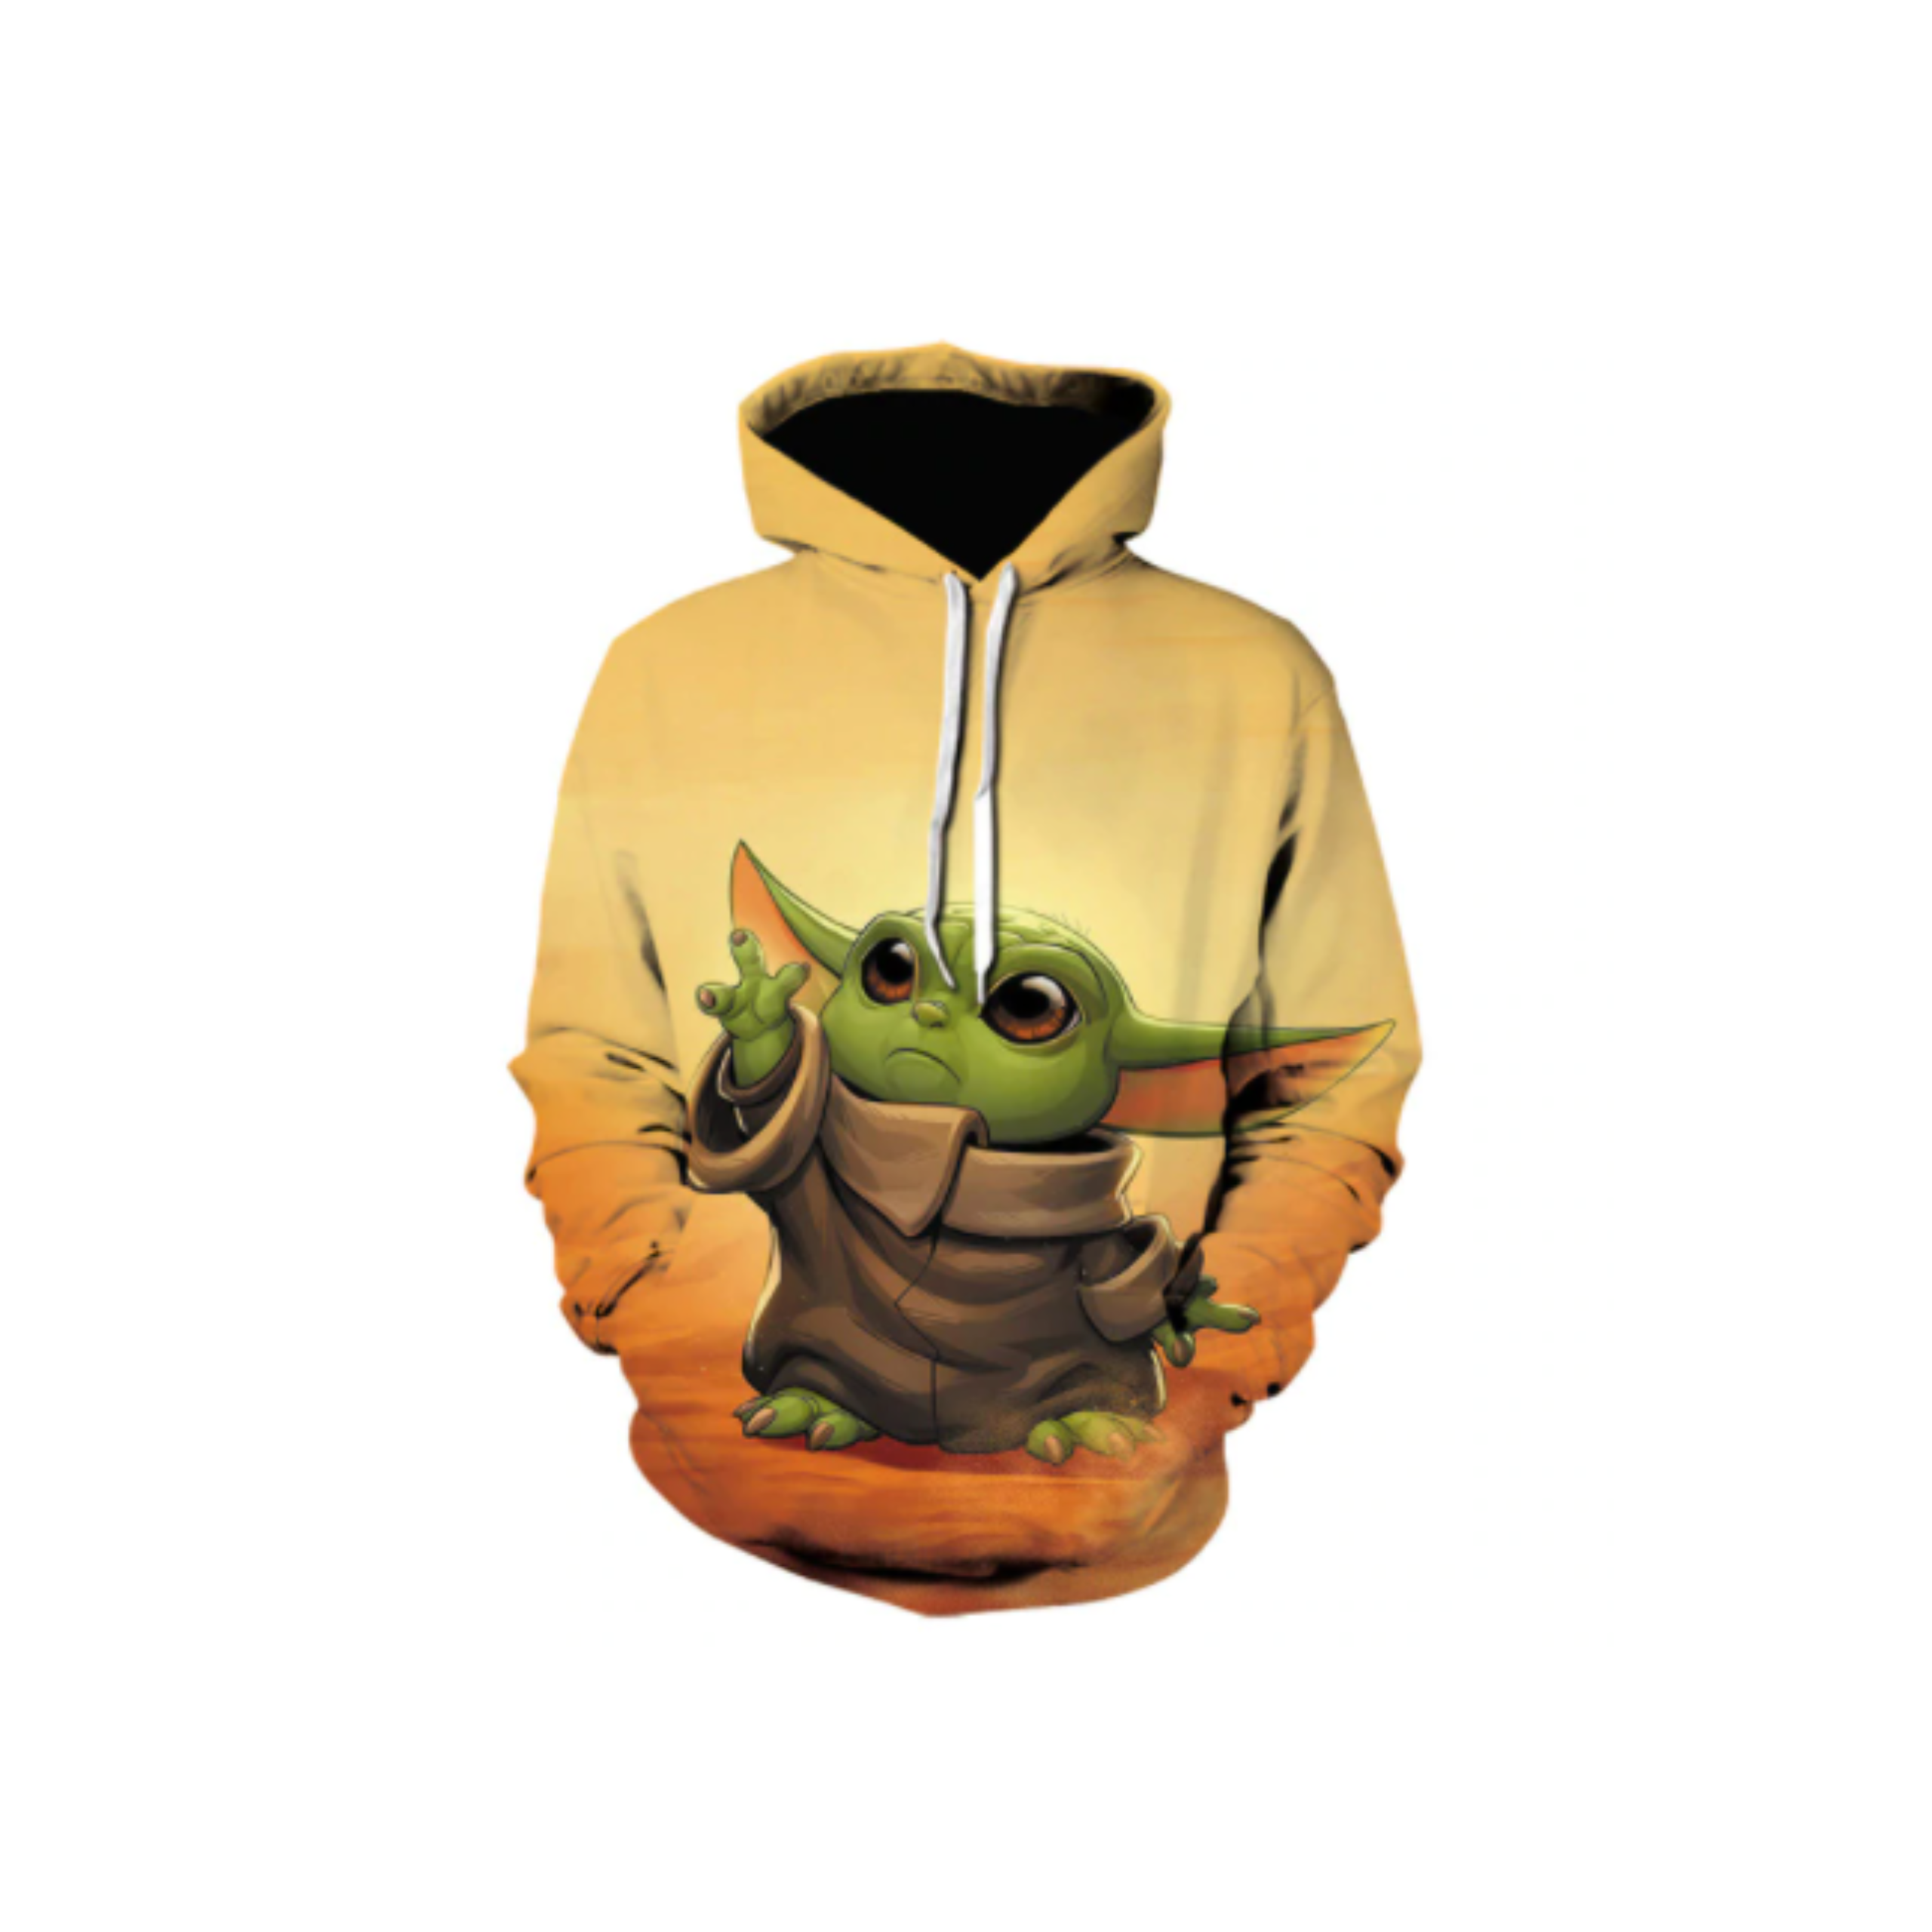 Yoda Hoodie Exclusive Art Design Sweatshirt Custom Hoodie Adult Mens NEW